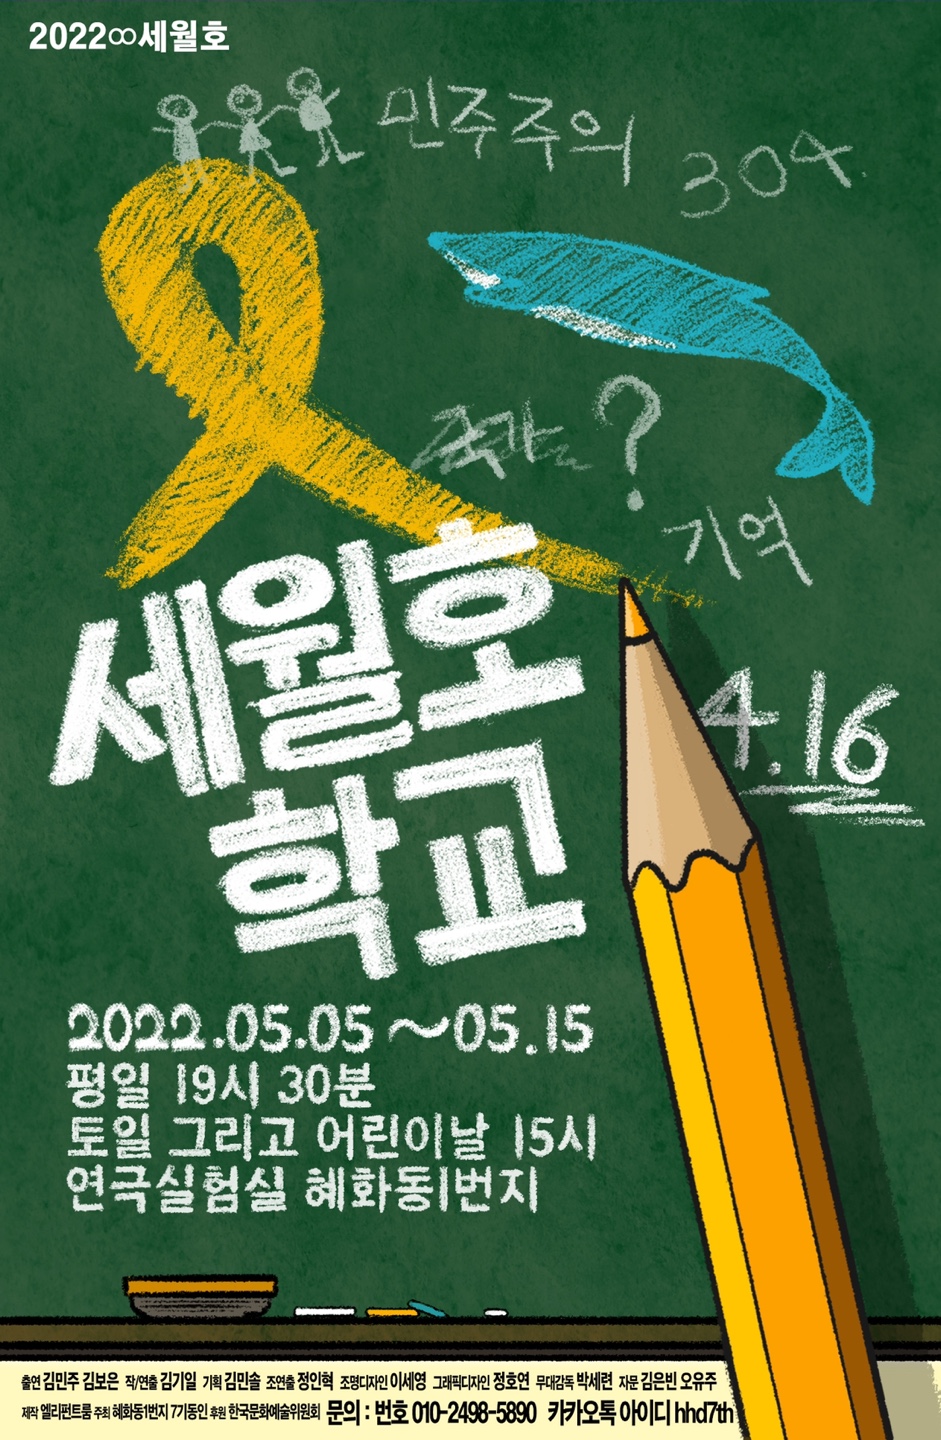 제목 : 세월호 학교_2022∞세월호의 포스터 사진